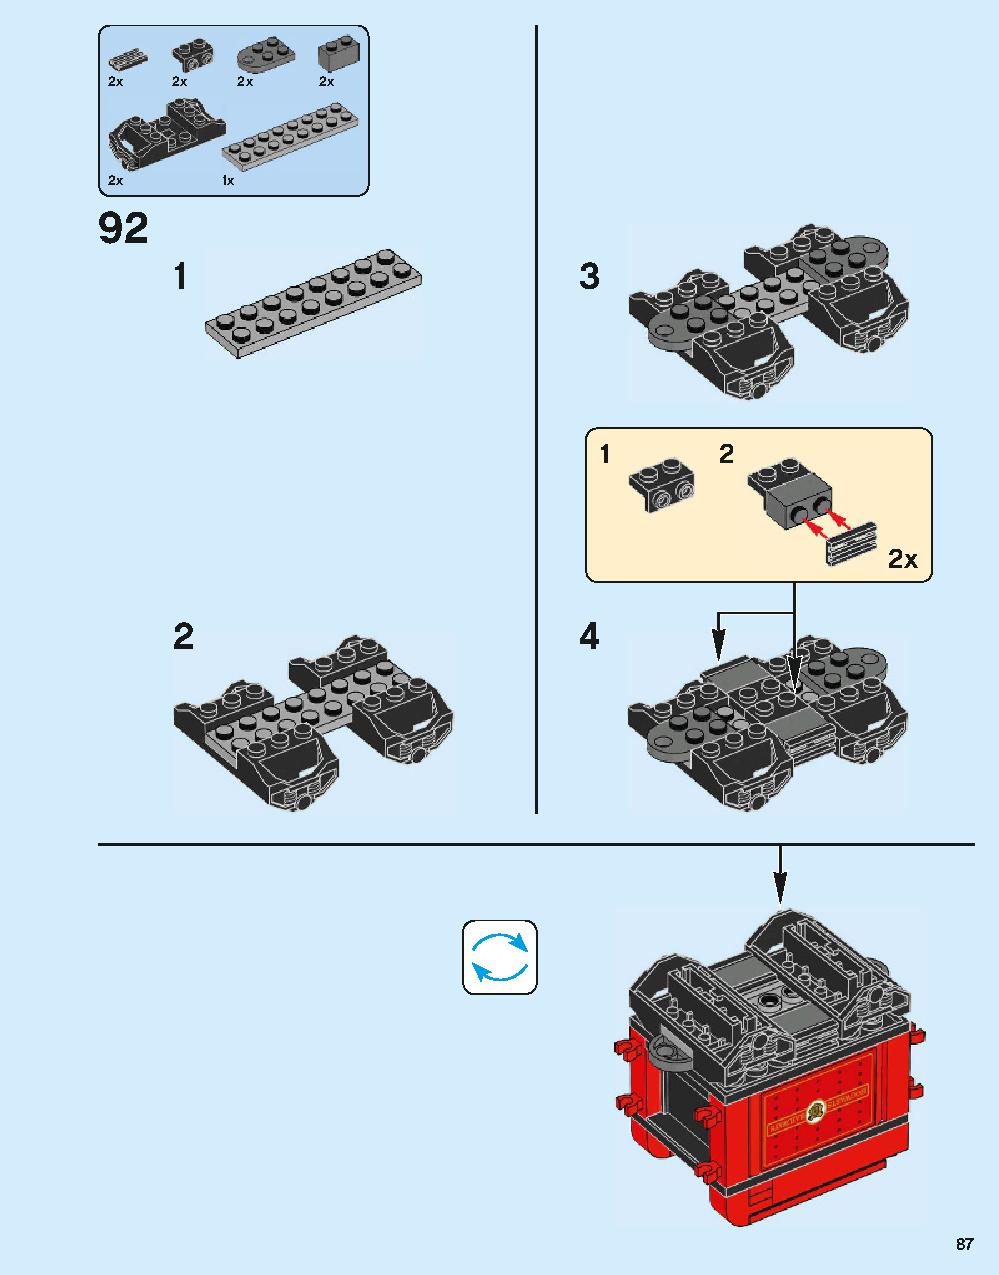 ホグワーツ特急 75955 レゴの商品情報 レゴの説明書・組立方法 87 page